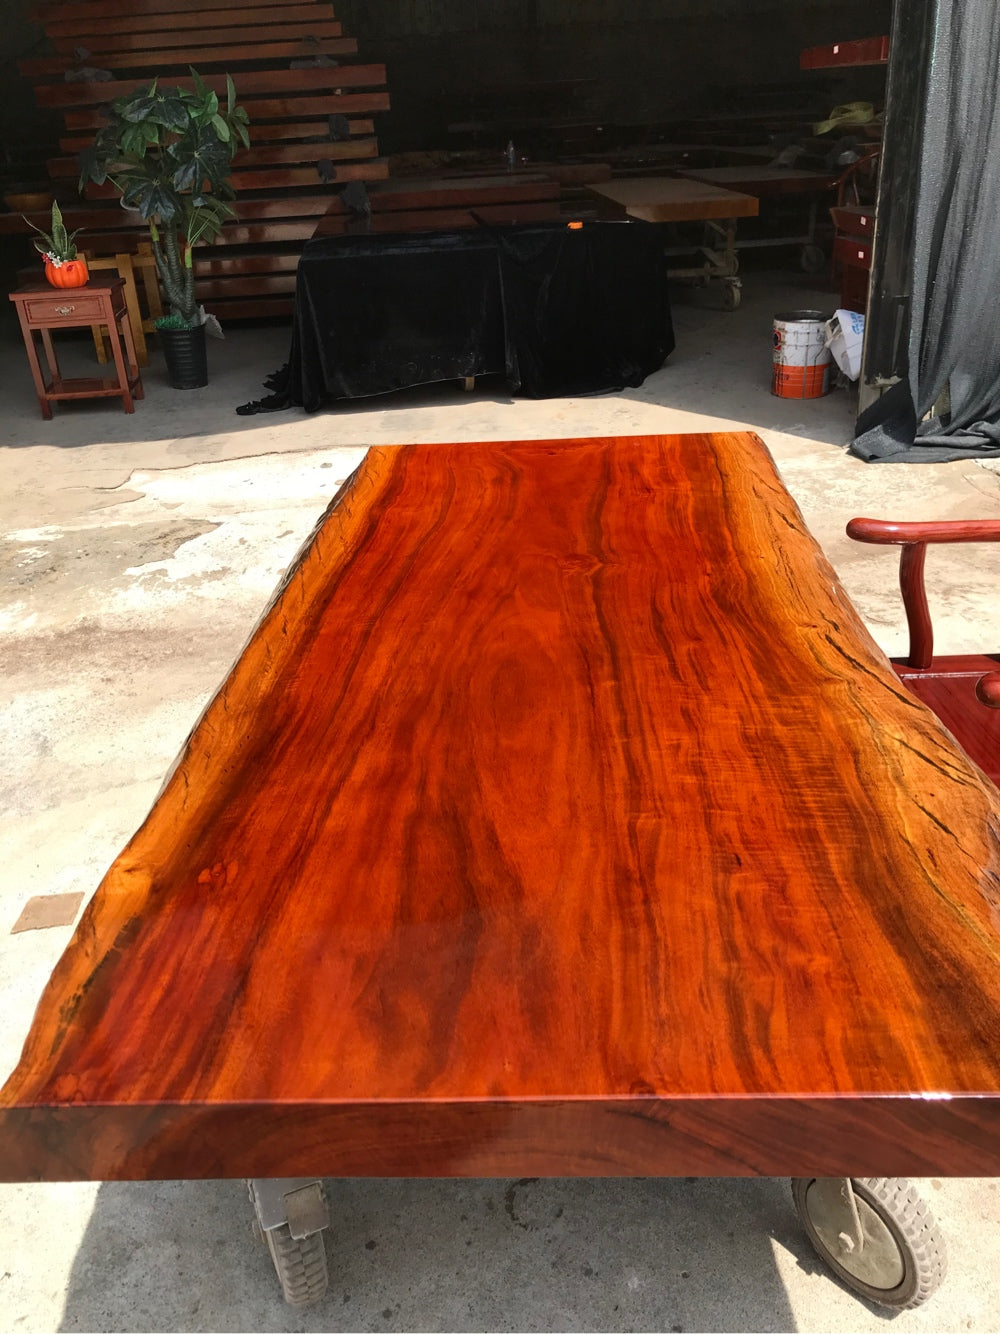 Losas de madera para tableros de mesa Reino Unido, mesa de comedor de losa <tc>Rhodesian Copal wood</tc>, tablero de mesa de losa de madera.